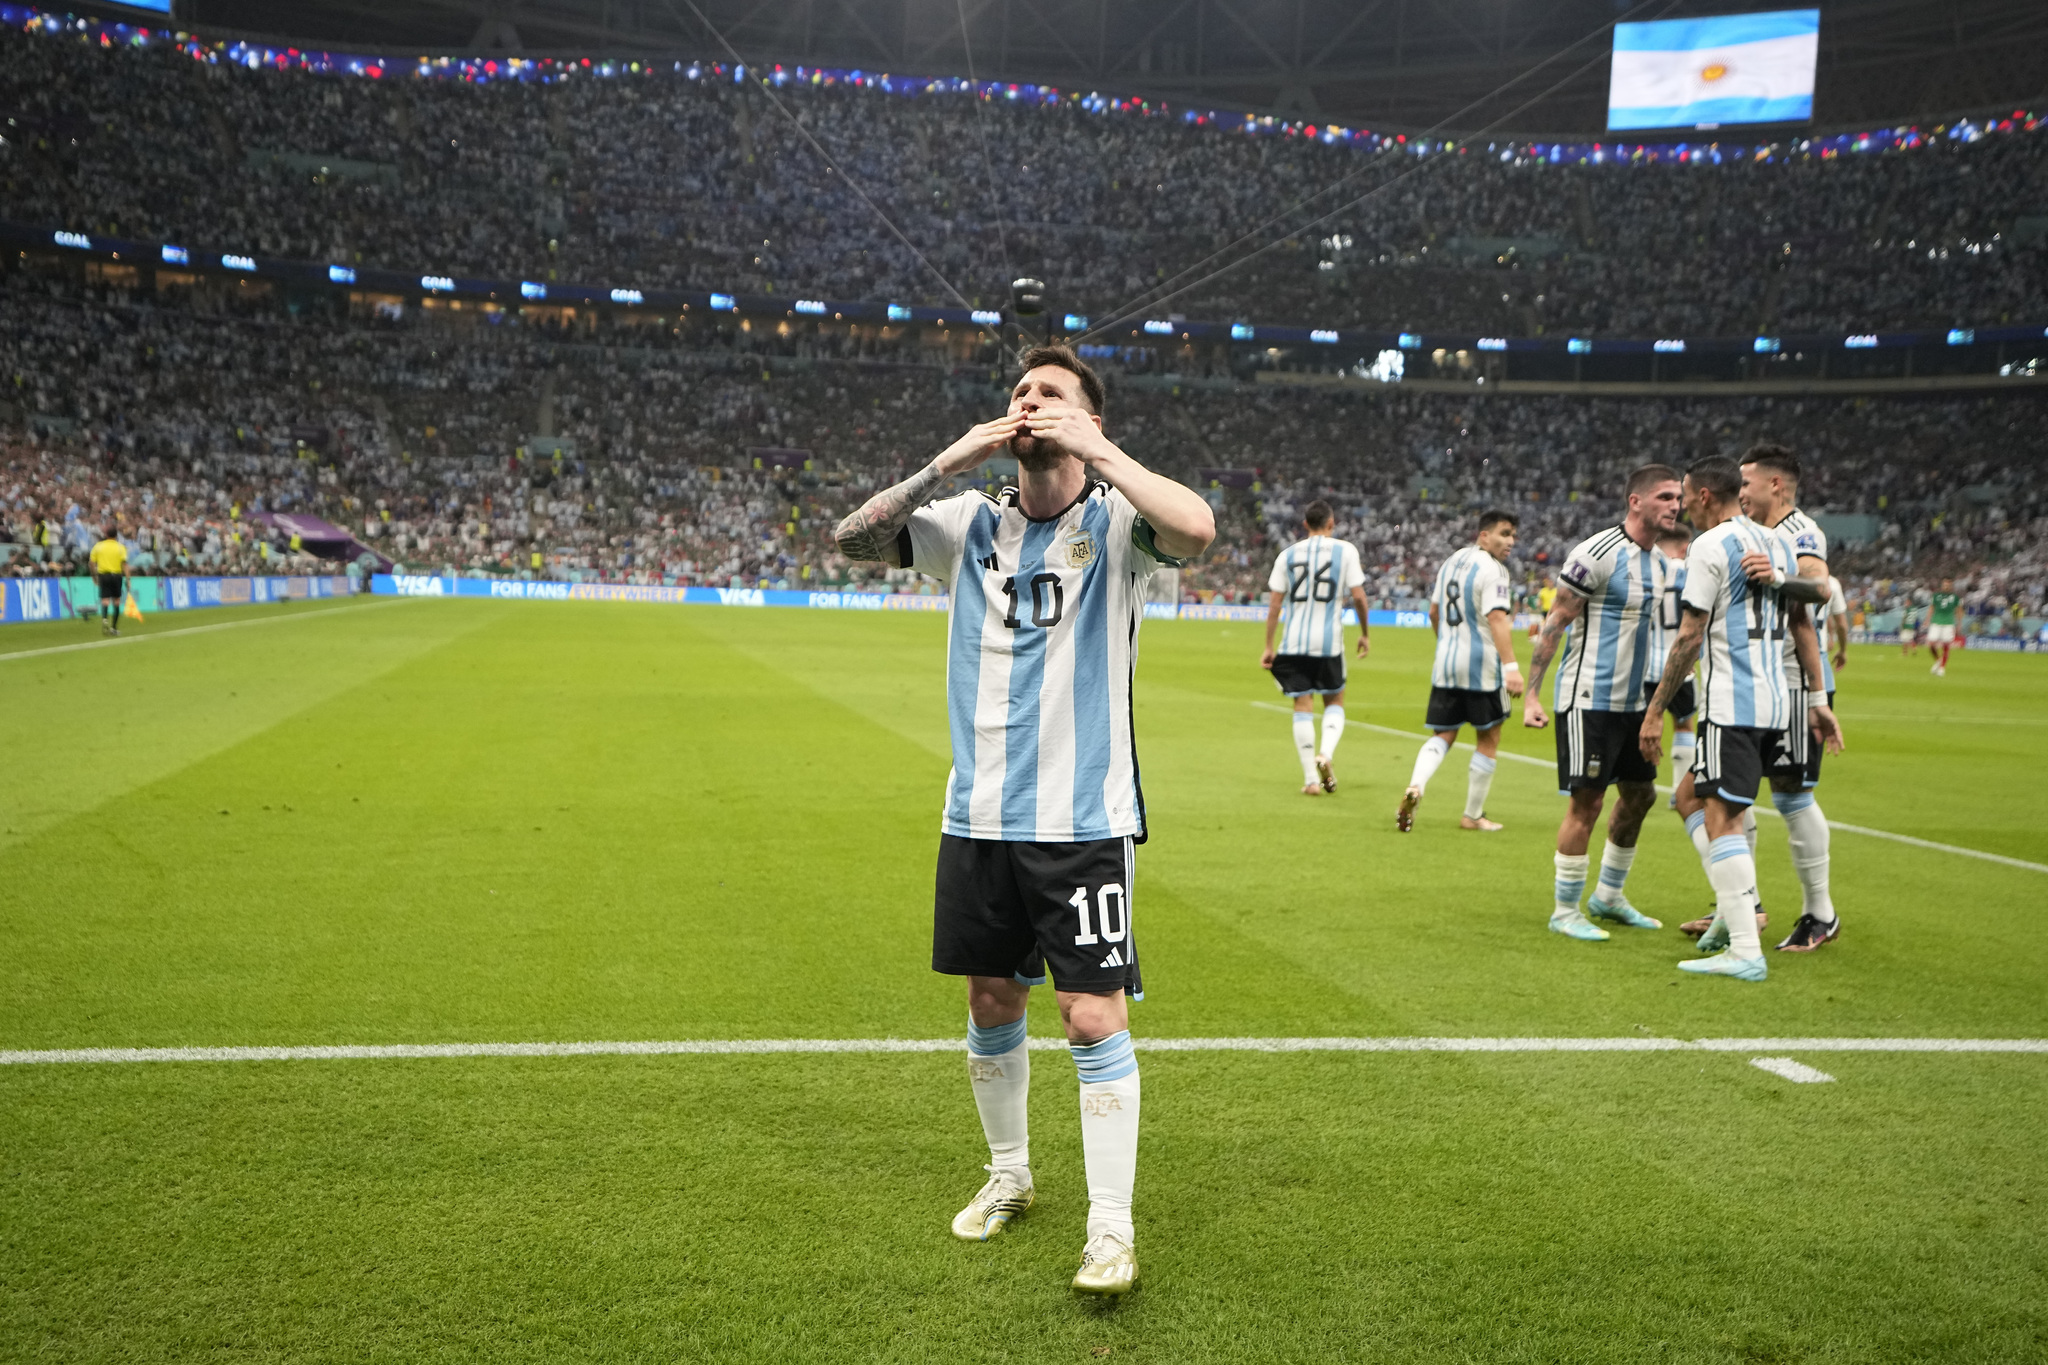 Messi celebrates the goal against M